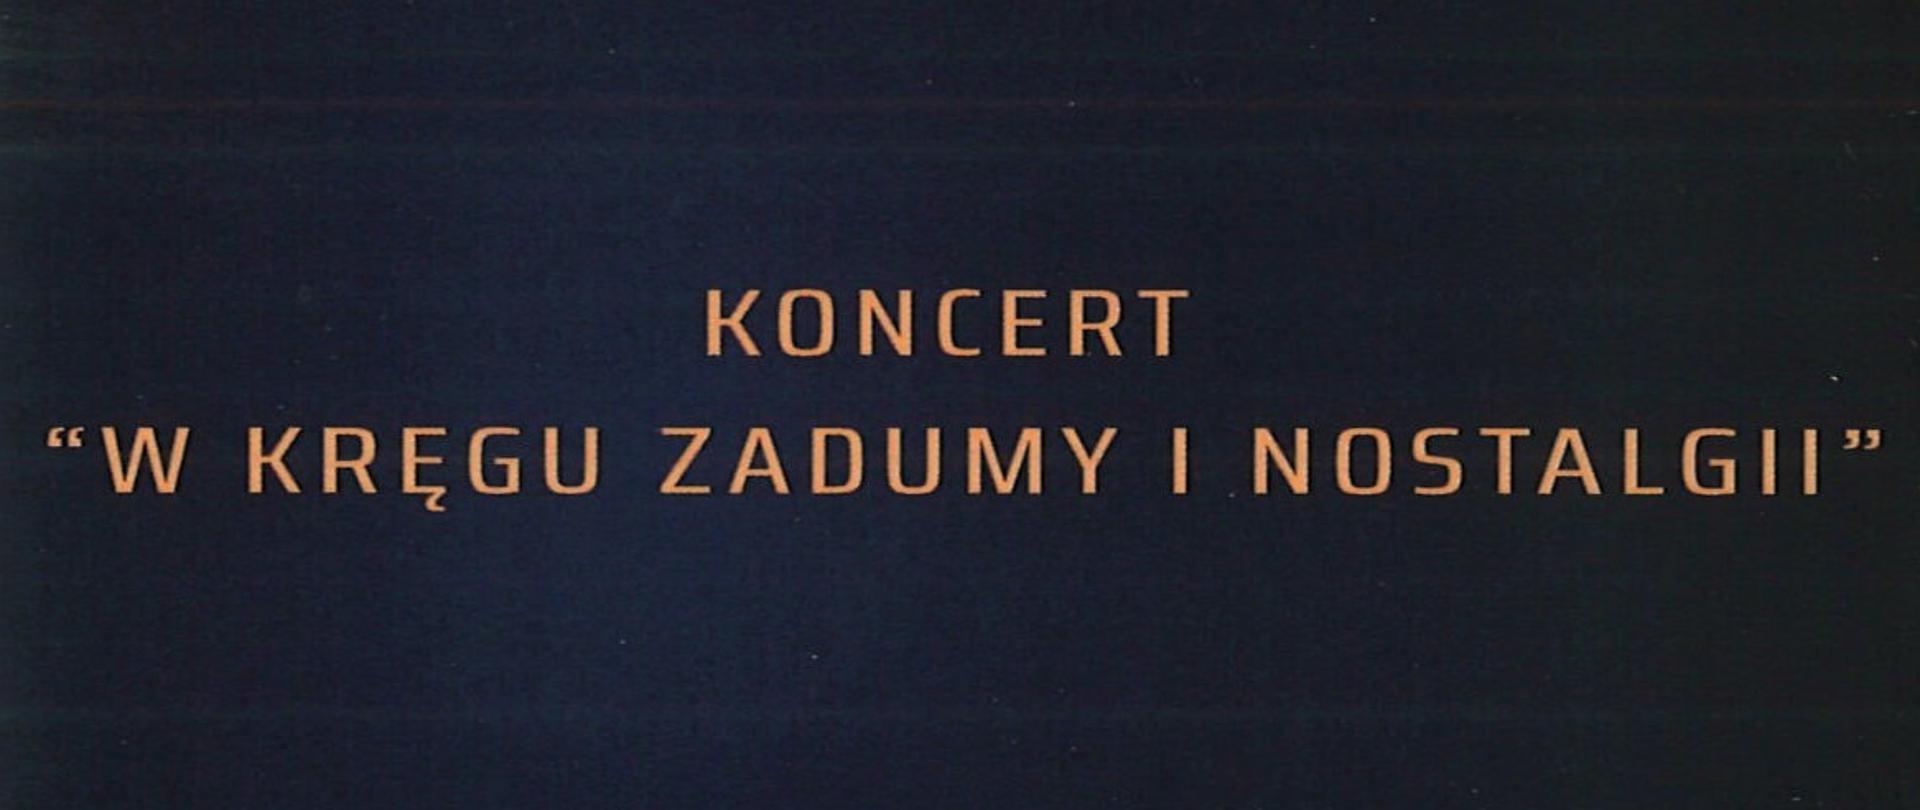 Plakat z wydarzeniem - Koncert "W kręgu zadumy i nostalgii", napisy znajdują się na czarny tle, w górnym prawym roku znajduje się logo Urzędu Miasta, po lewej stronie umieszczono datę i godzinę Koncertu, który organizowany jest w ramach Międzynarodowego Festiwalu Dębickie Korzenie Krzysztof Penderecki In Memorian 